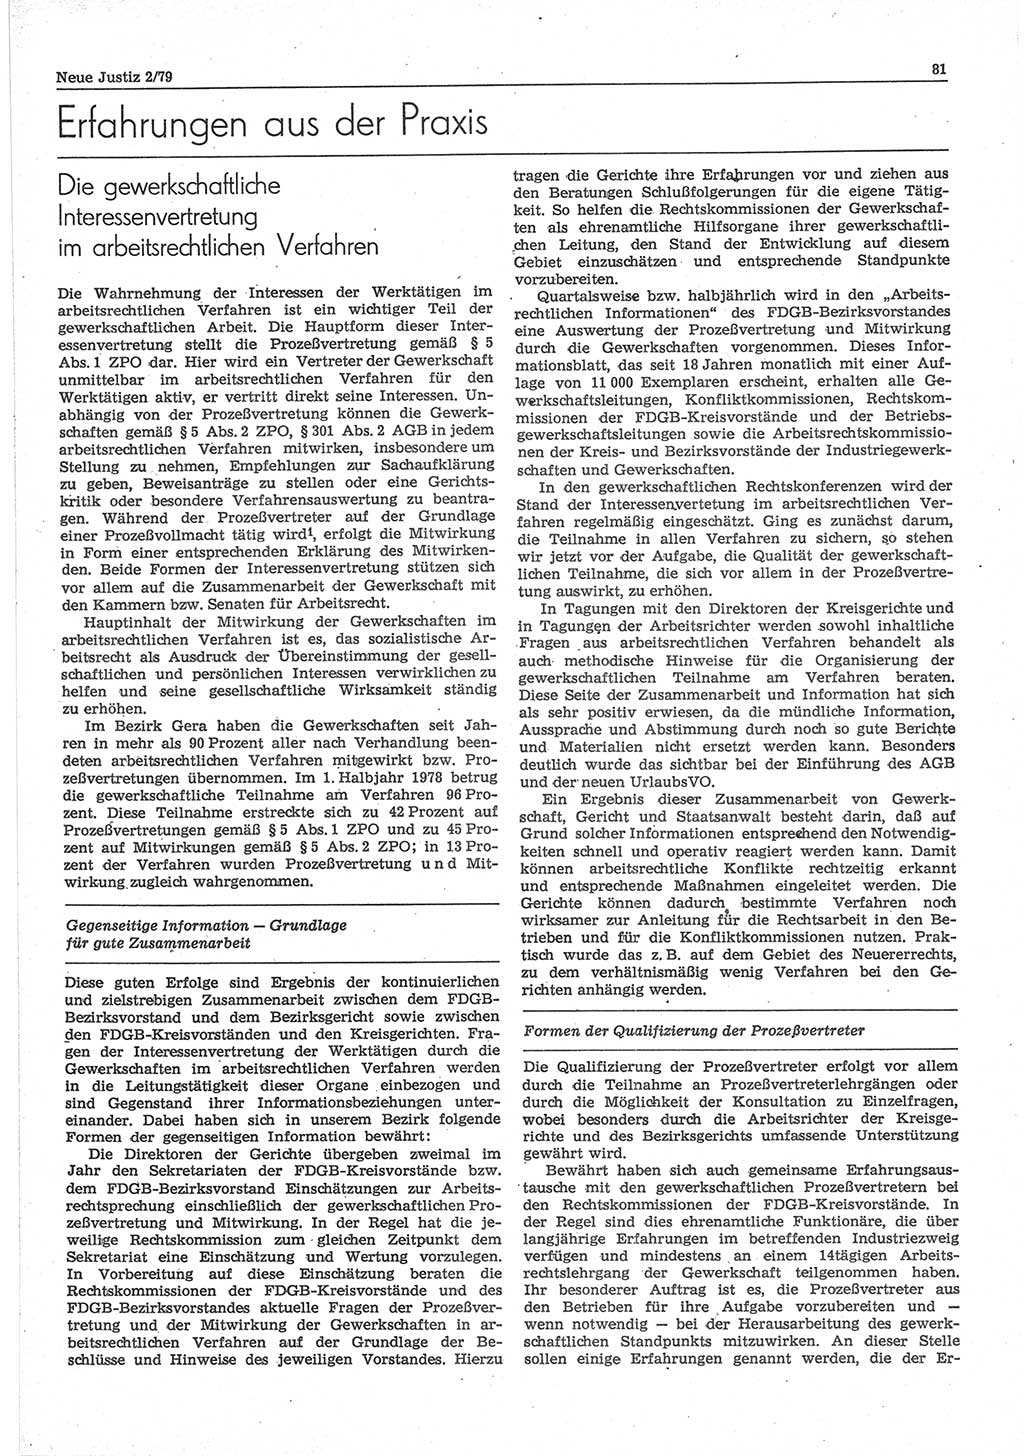 Neue Justiz (NJ), Zeitschrift für sozialistisches Recht und Gesetzlichkeit [Deutsche Demokratische Republik (DDR)], 33. Jahrgang 1979, Seite 81 (NJ DDR 1979, S. 81)